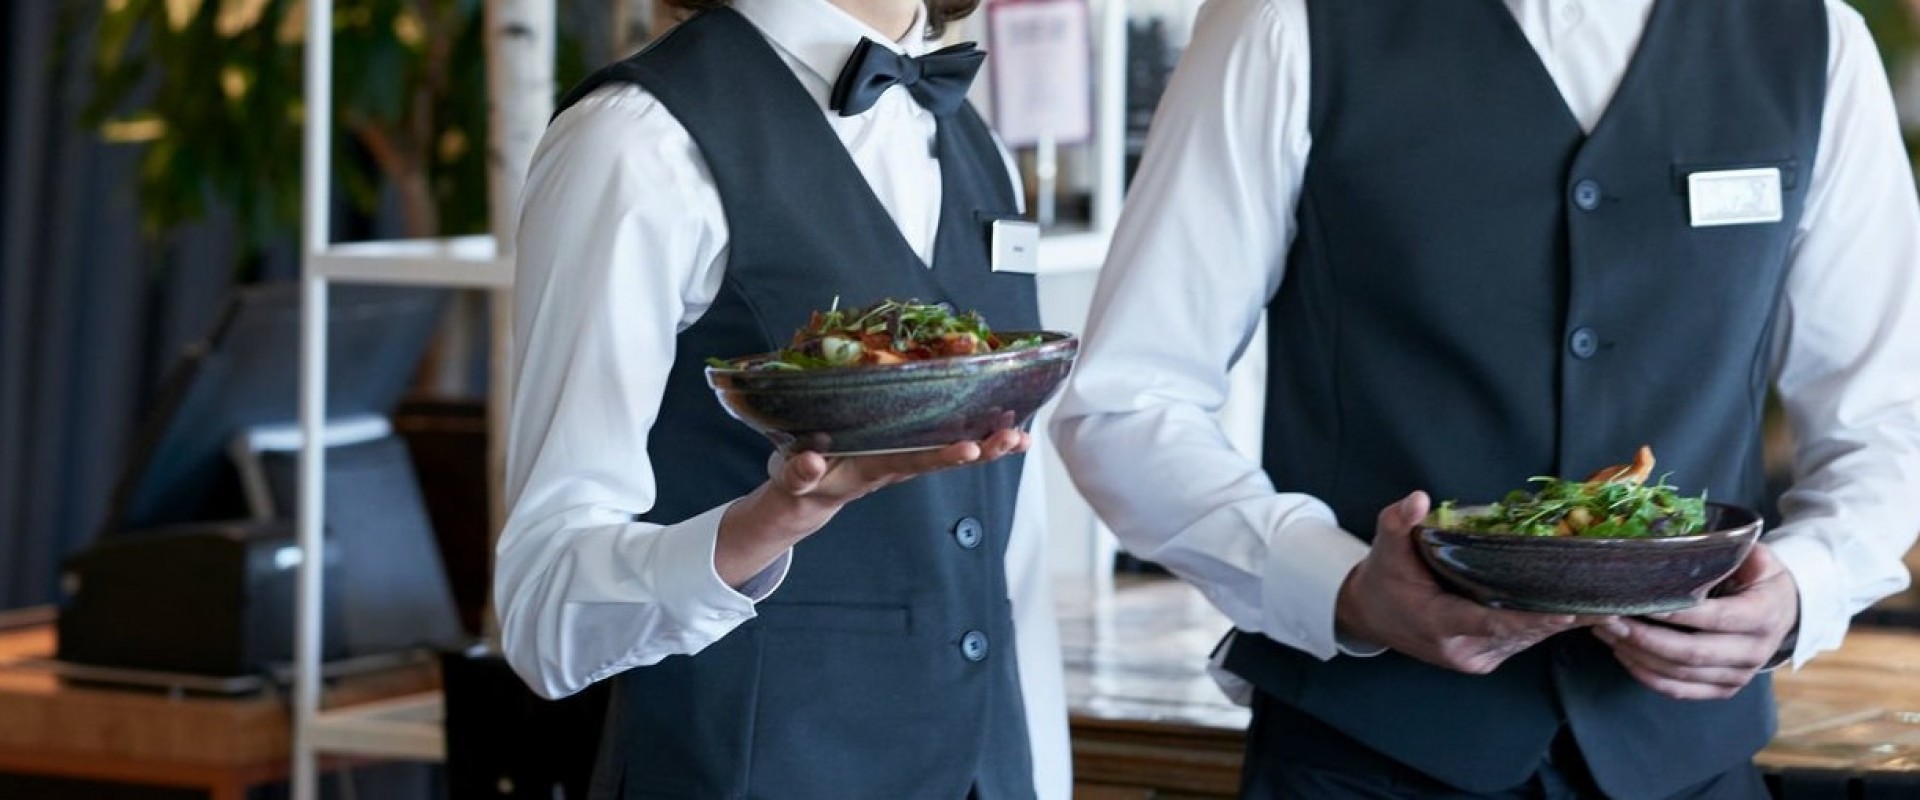 10 заповедей обучения персонала в ресторане